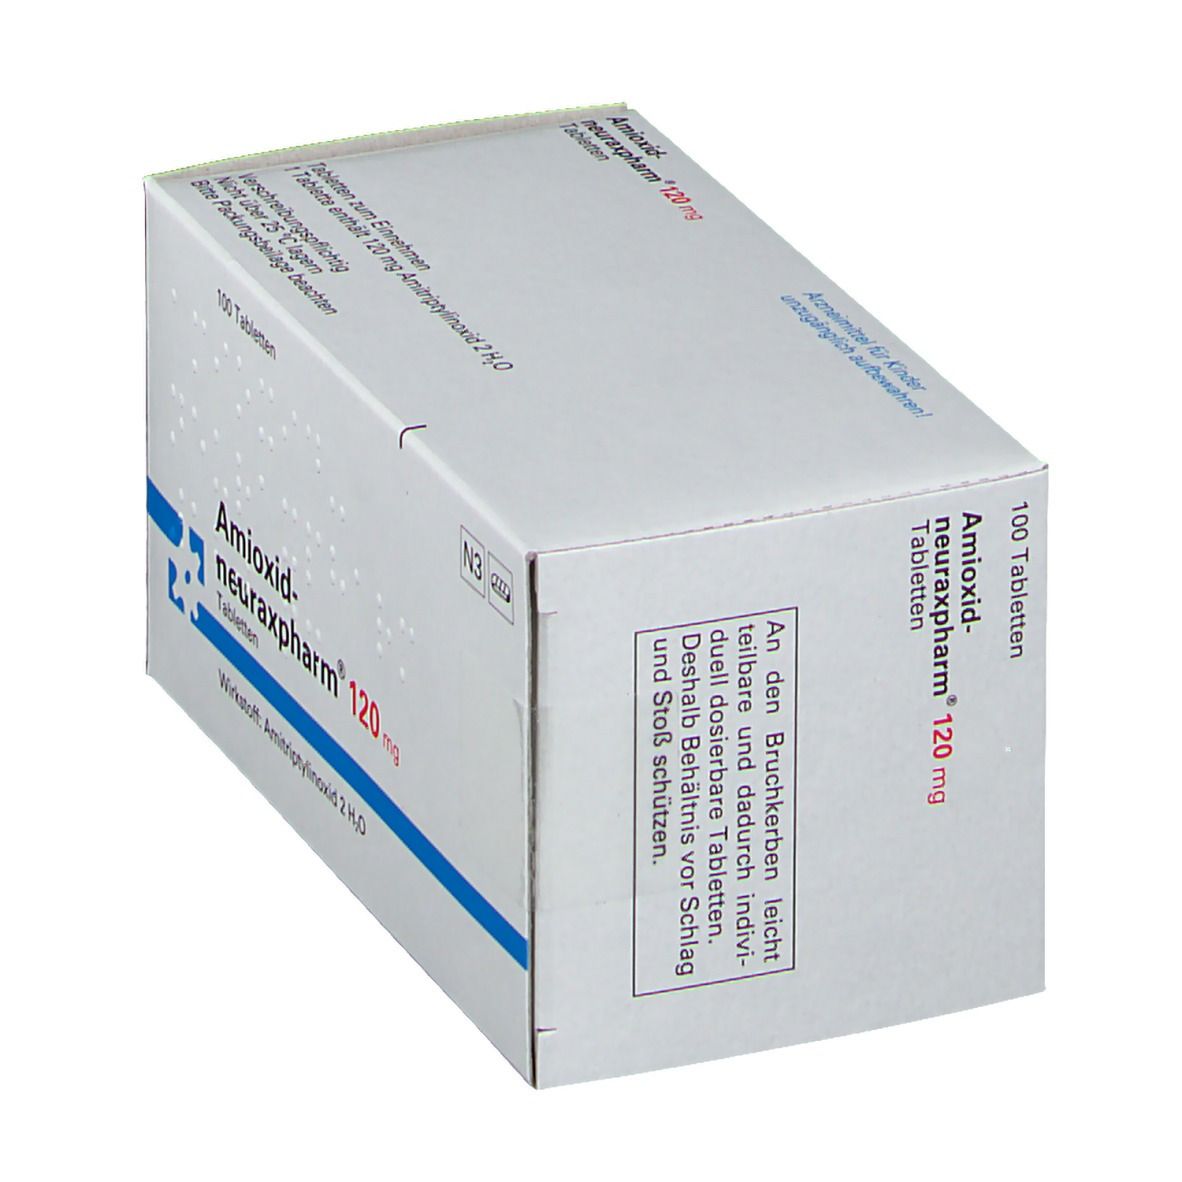 Amioxid-neuraxpharm® 120 mg